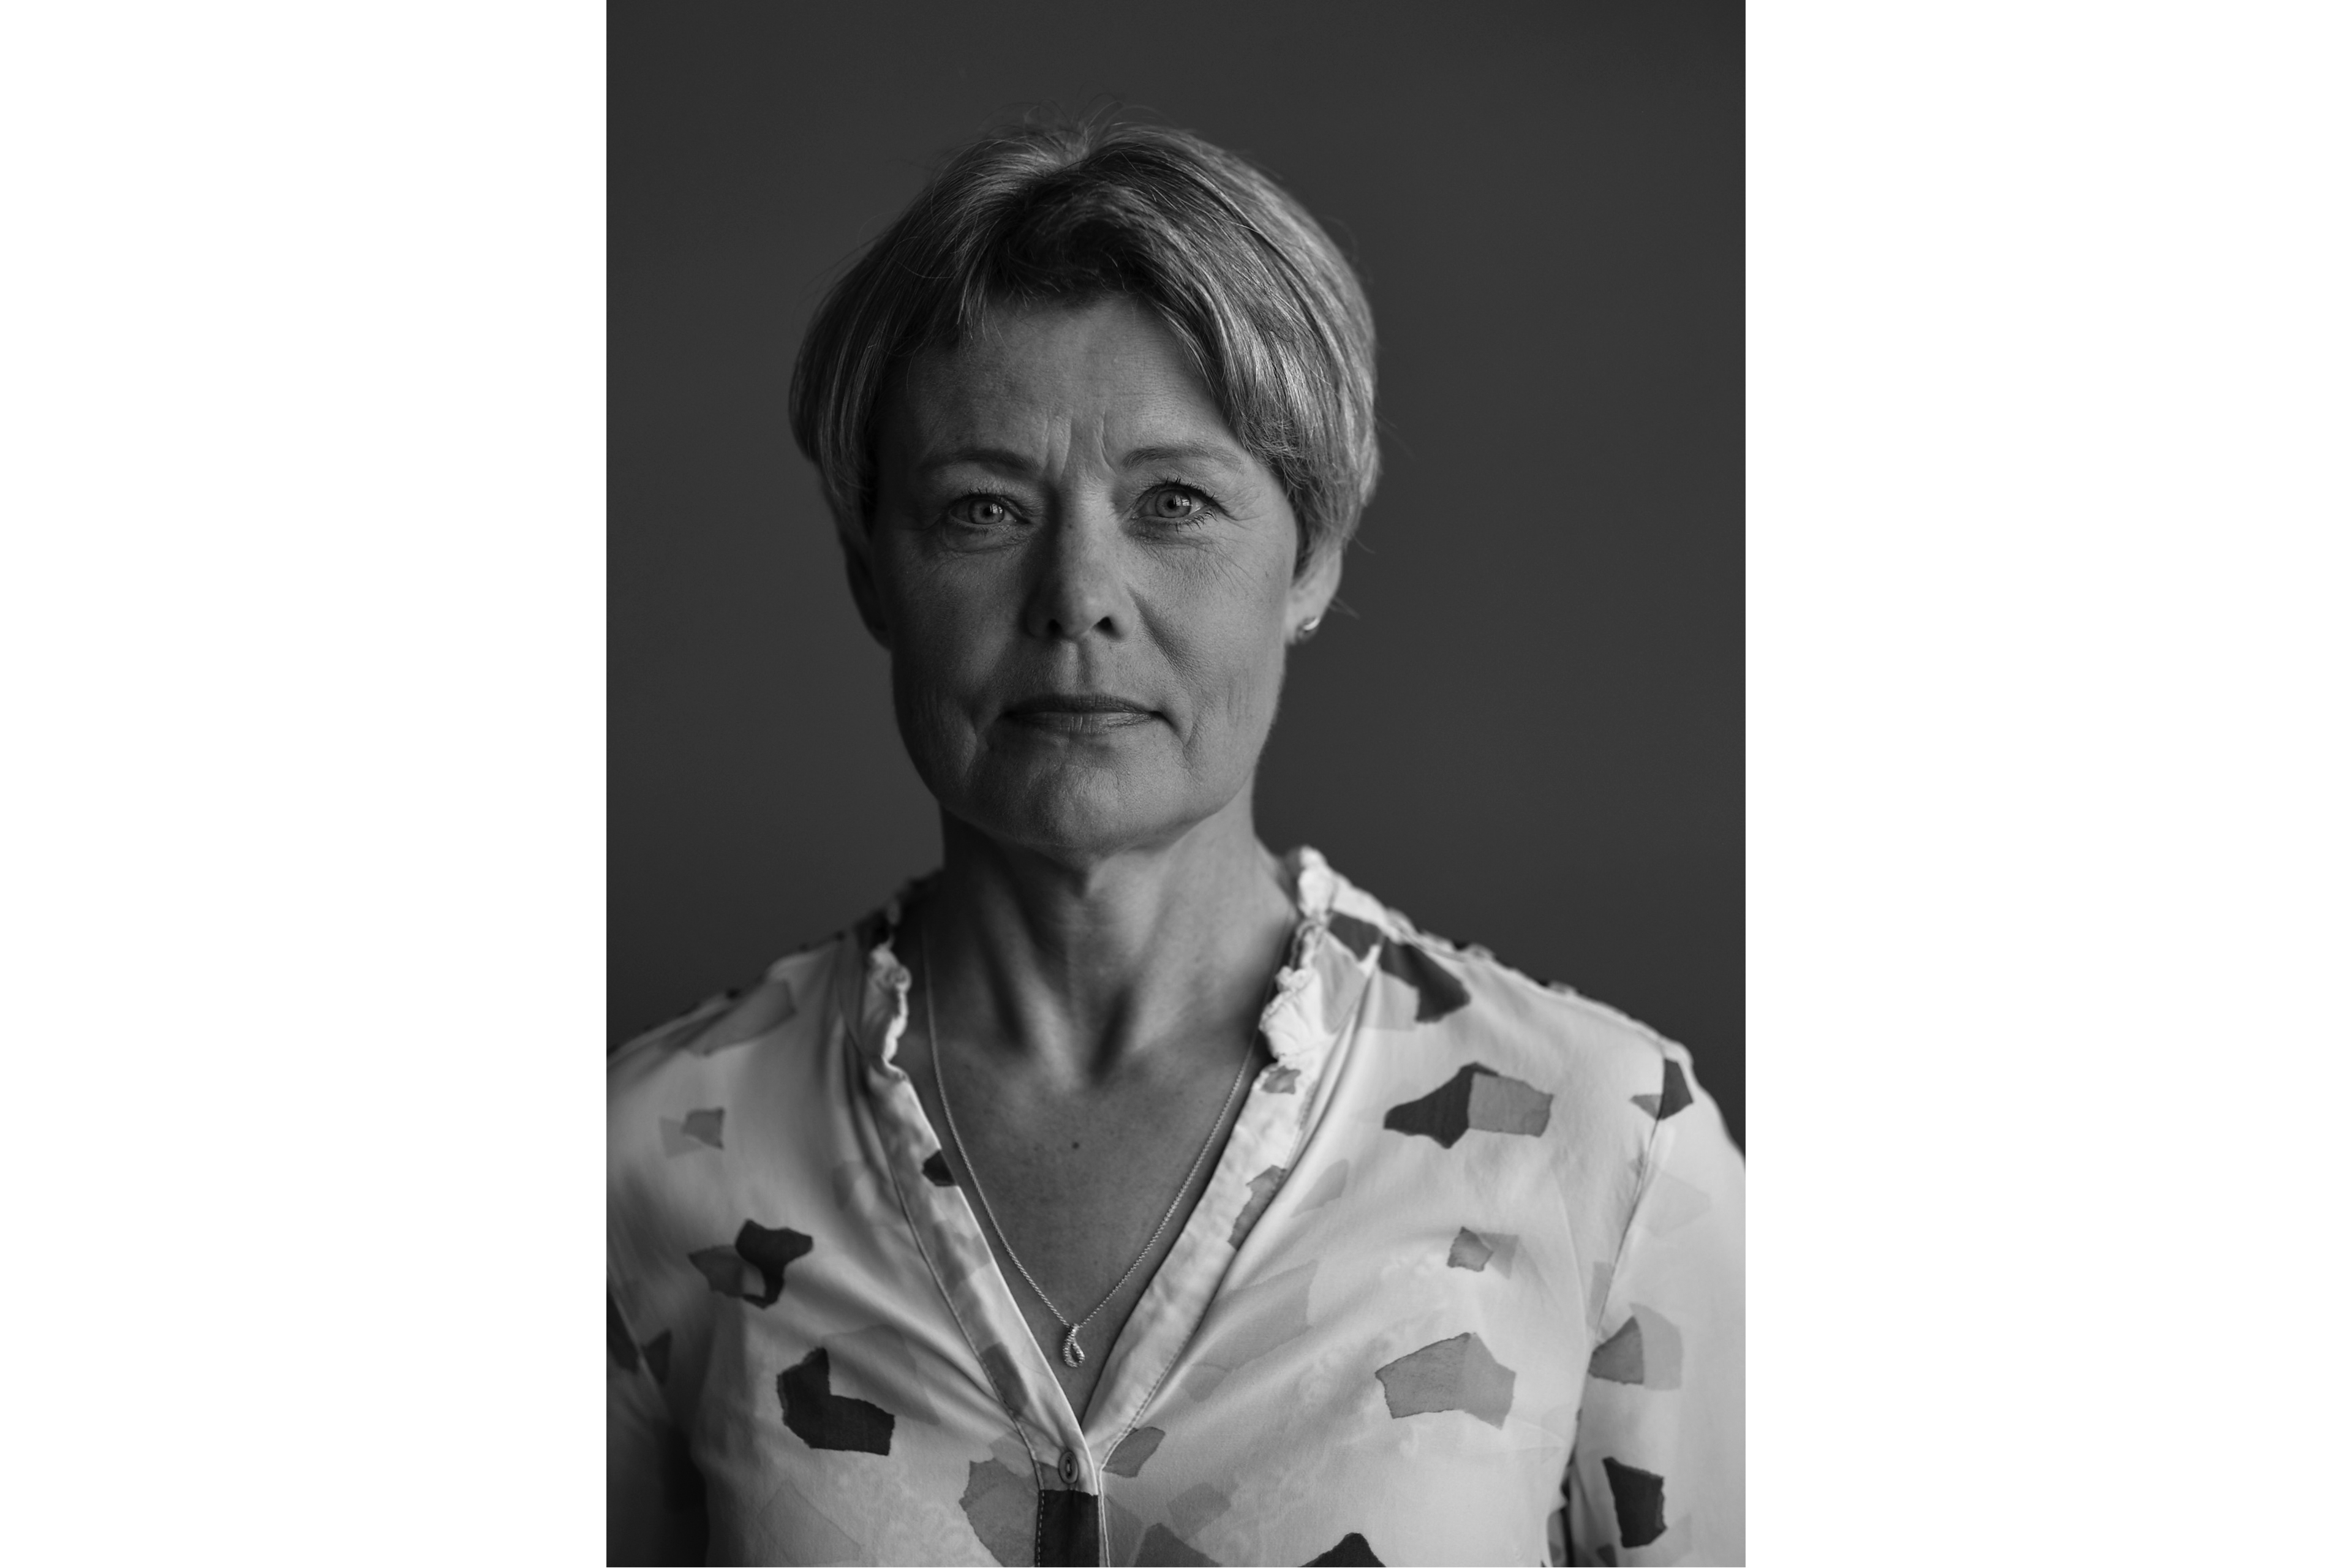 Portræt af Susanne Kure, Startup jury, EY Entrepreneur Of The Year